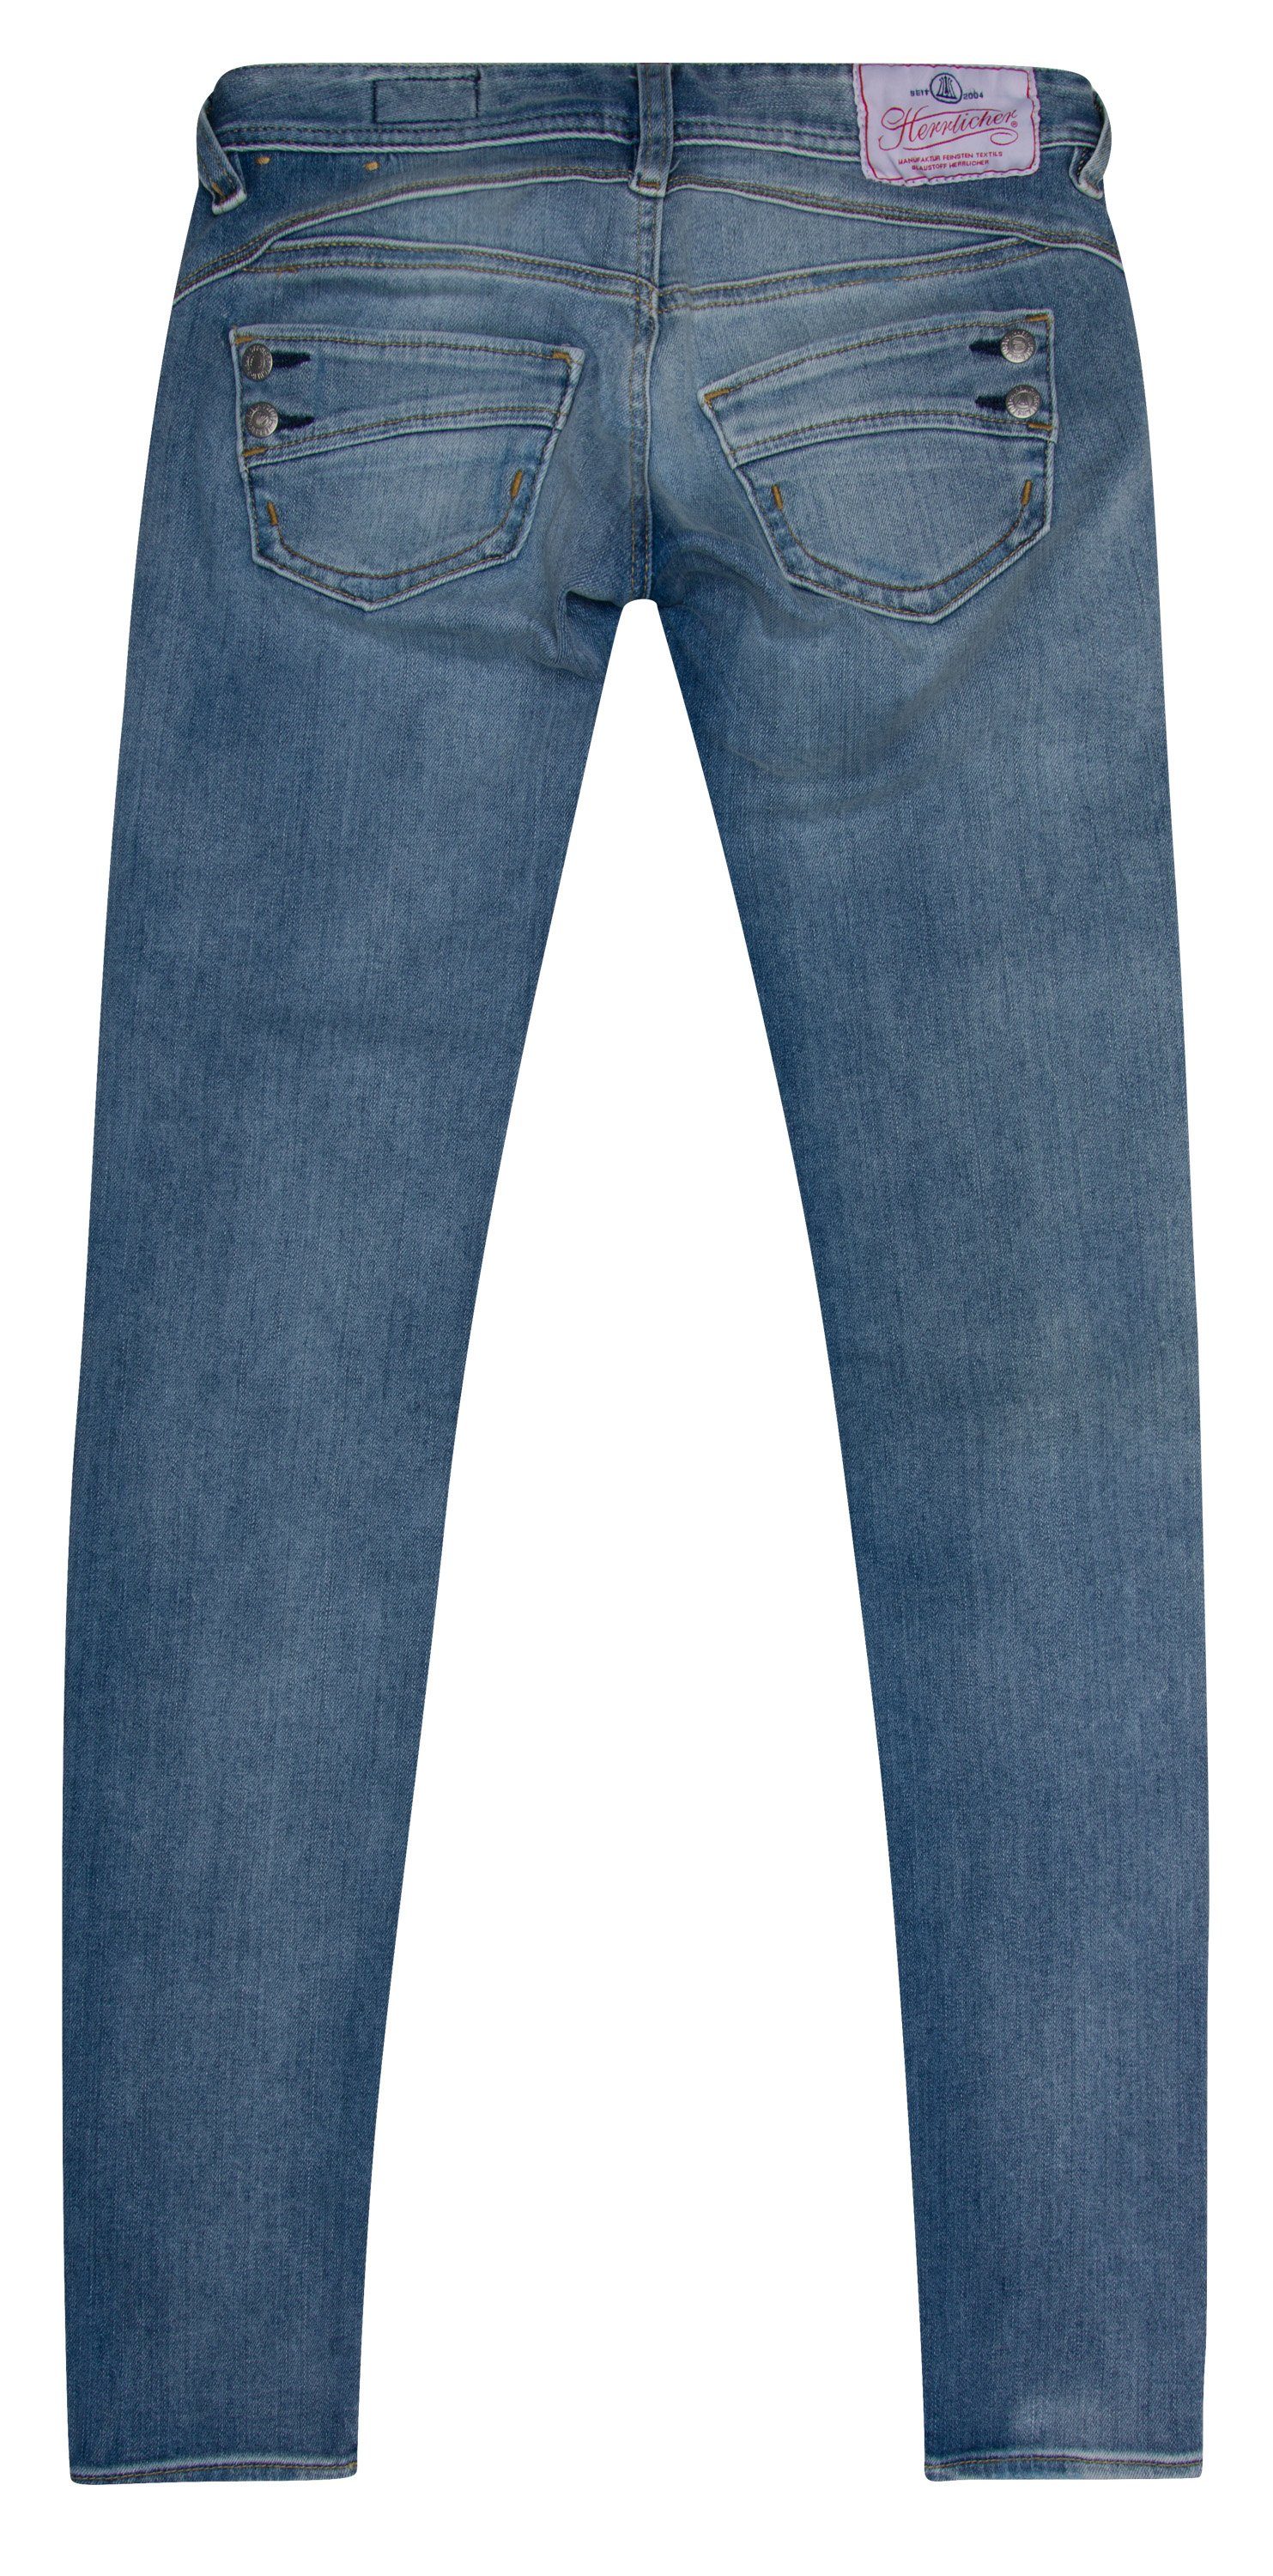 Herrlicher Stretch-Jeans HERRLICHER PIPER Slim cloudy Denim 5650-D9666-029 Powerstretch